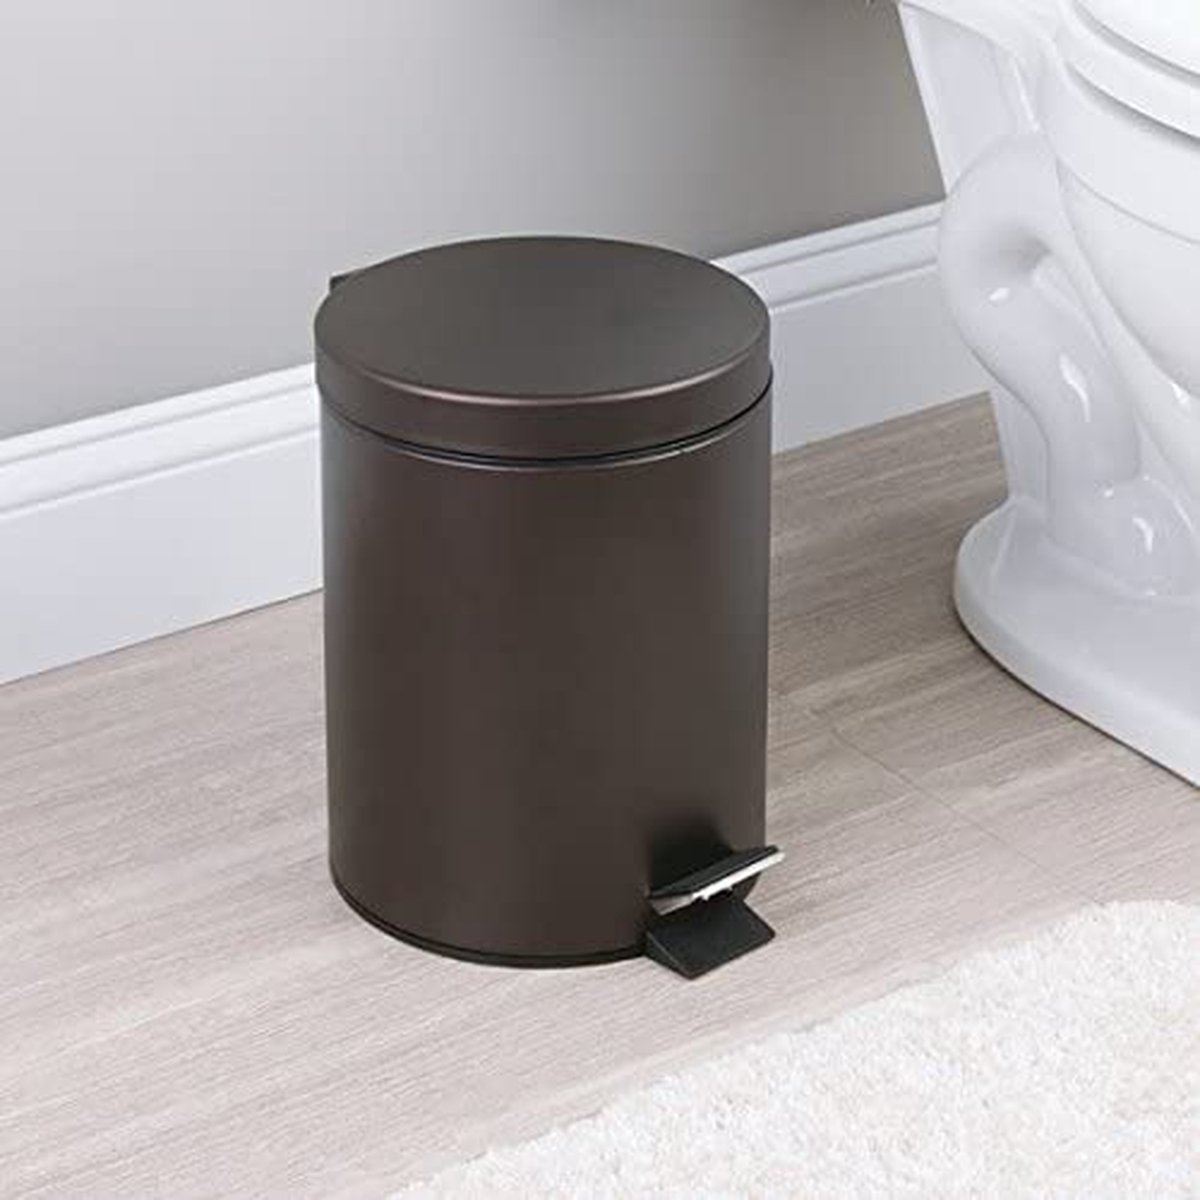 mDesign - Pedaalemmer - afvalbak/prullenbak - perfect voor badkamer, keuken en kantoor - met pedaal, deksel en plastic binnenemmer/ergonomisch design/metaal - 5 liter - brons